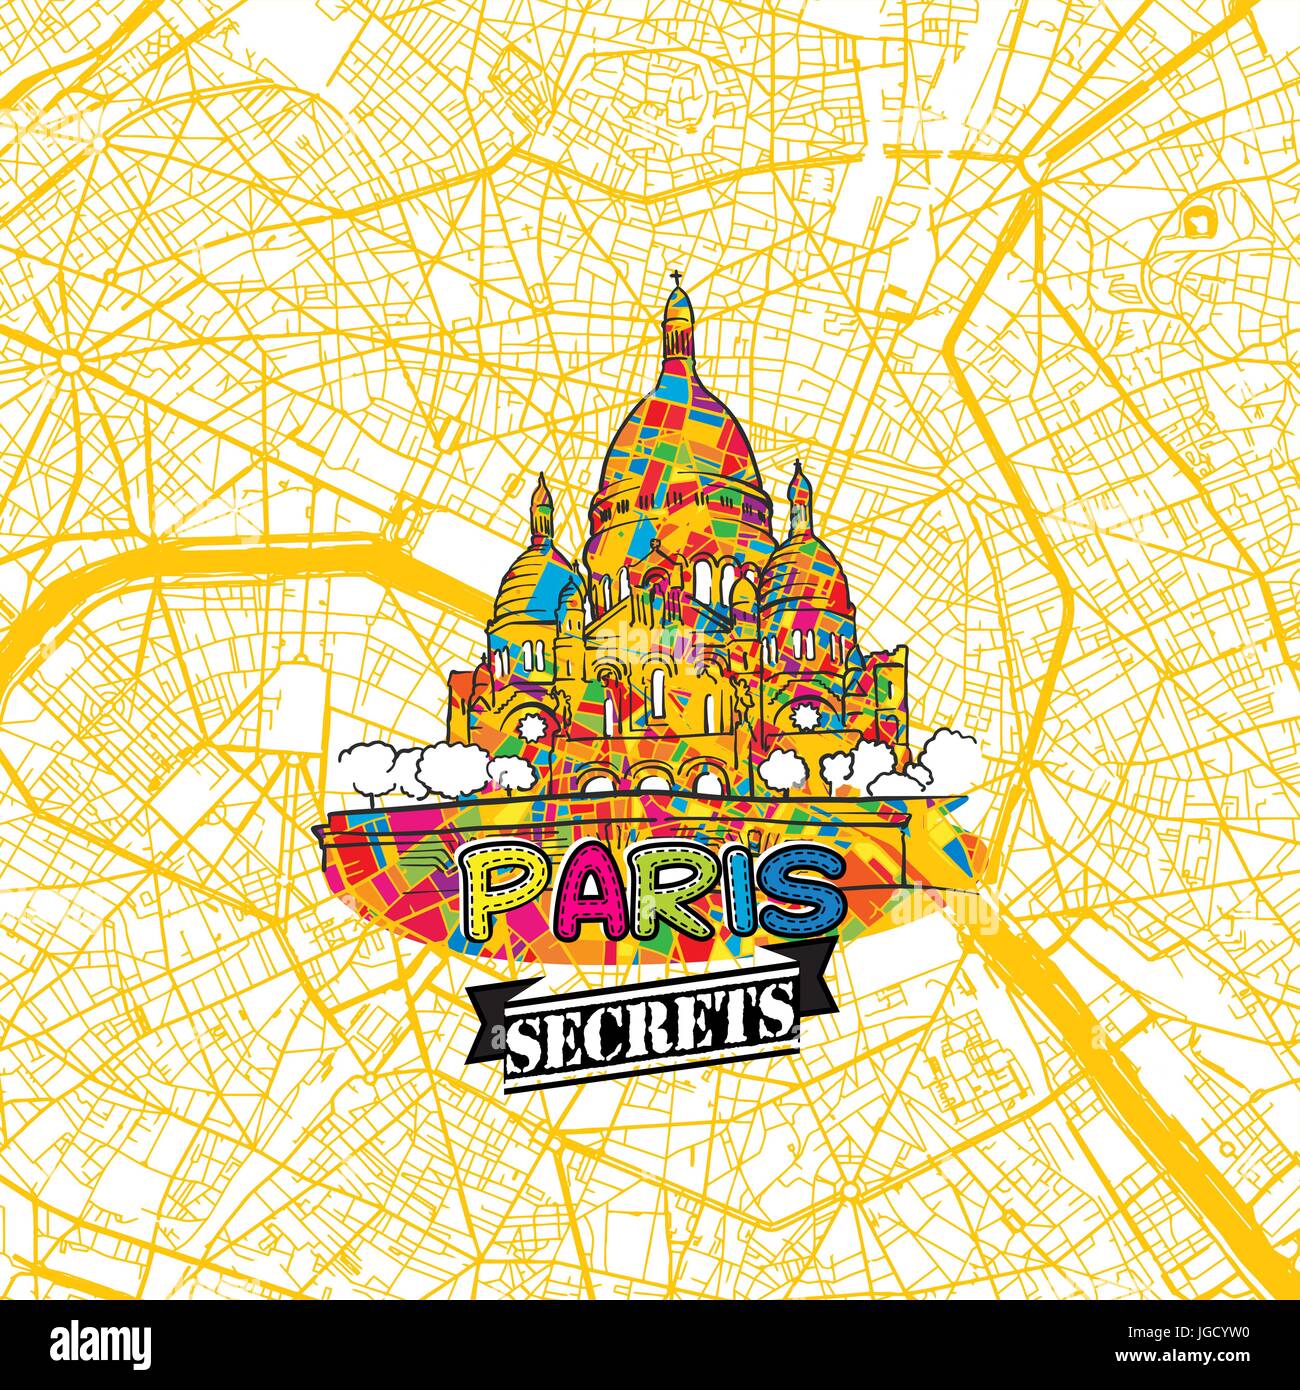 Paris Reisen Geheimnisse Art Map für die Zuordnung von Experten und Reiseführer. Handgemachte Stadt Logo, Typo-Abzeichen und Hand gezeichnete Vektor-Bild an der Spitze sind gruppiert und Stock Vektor